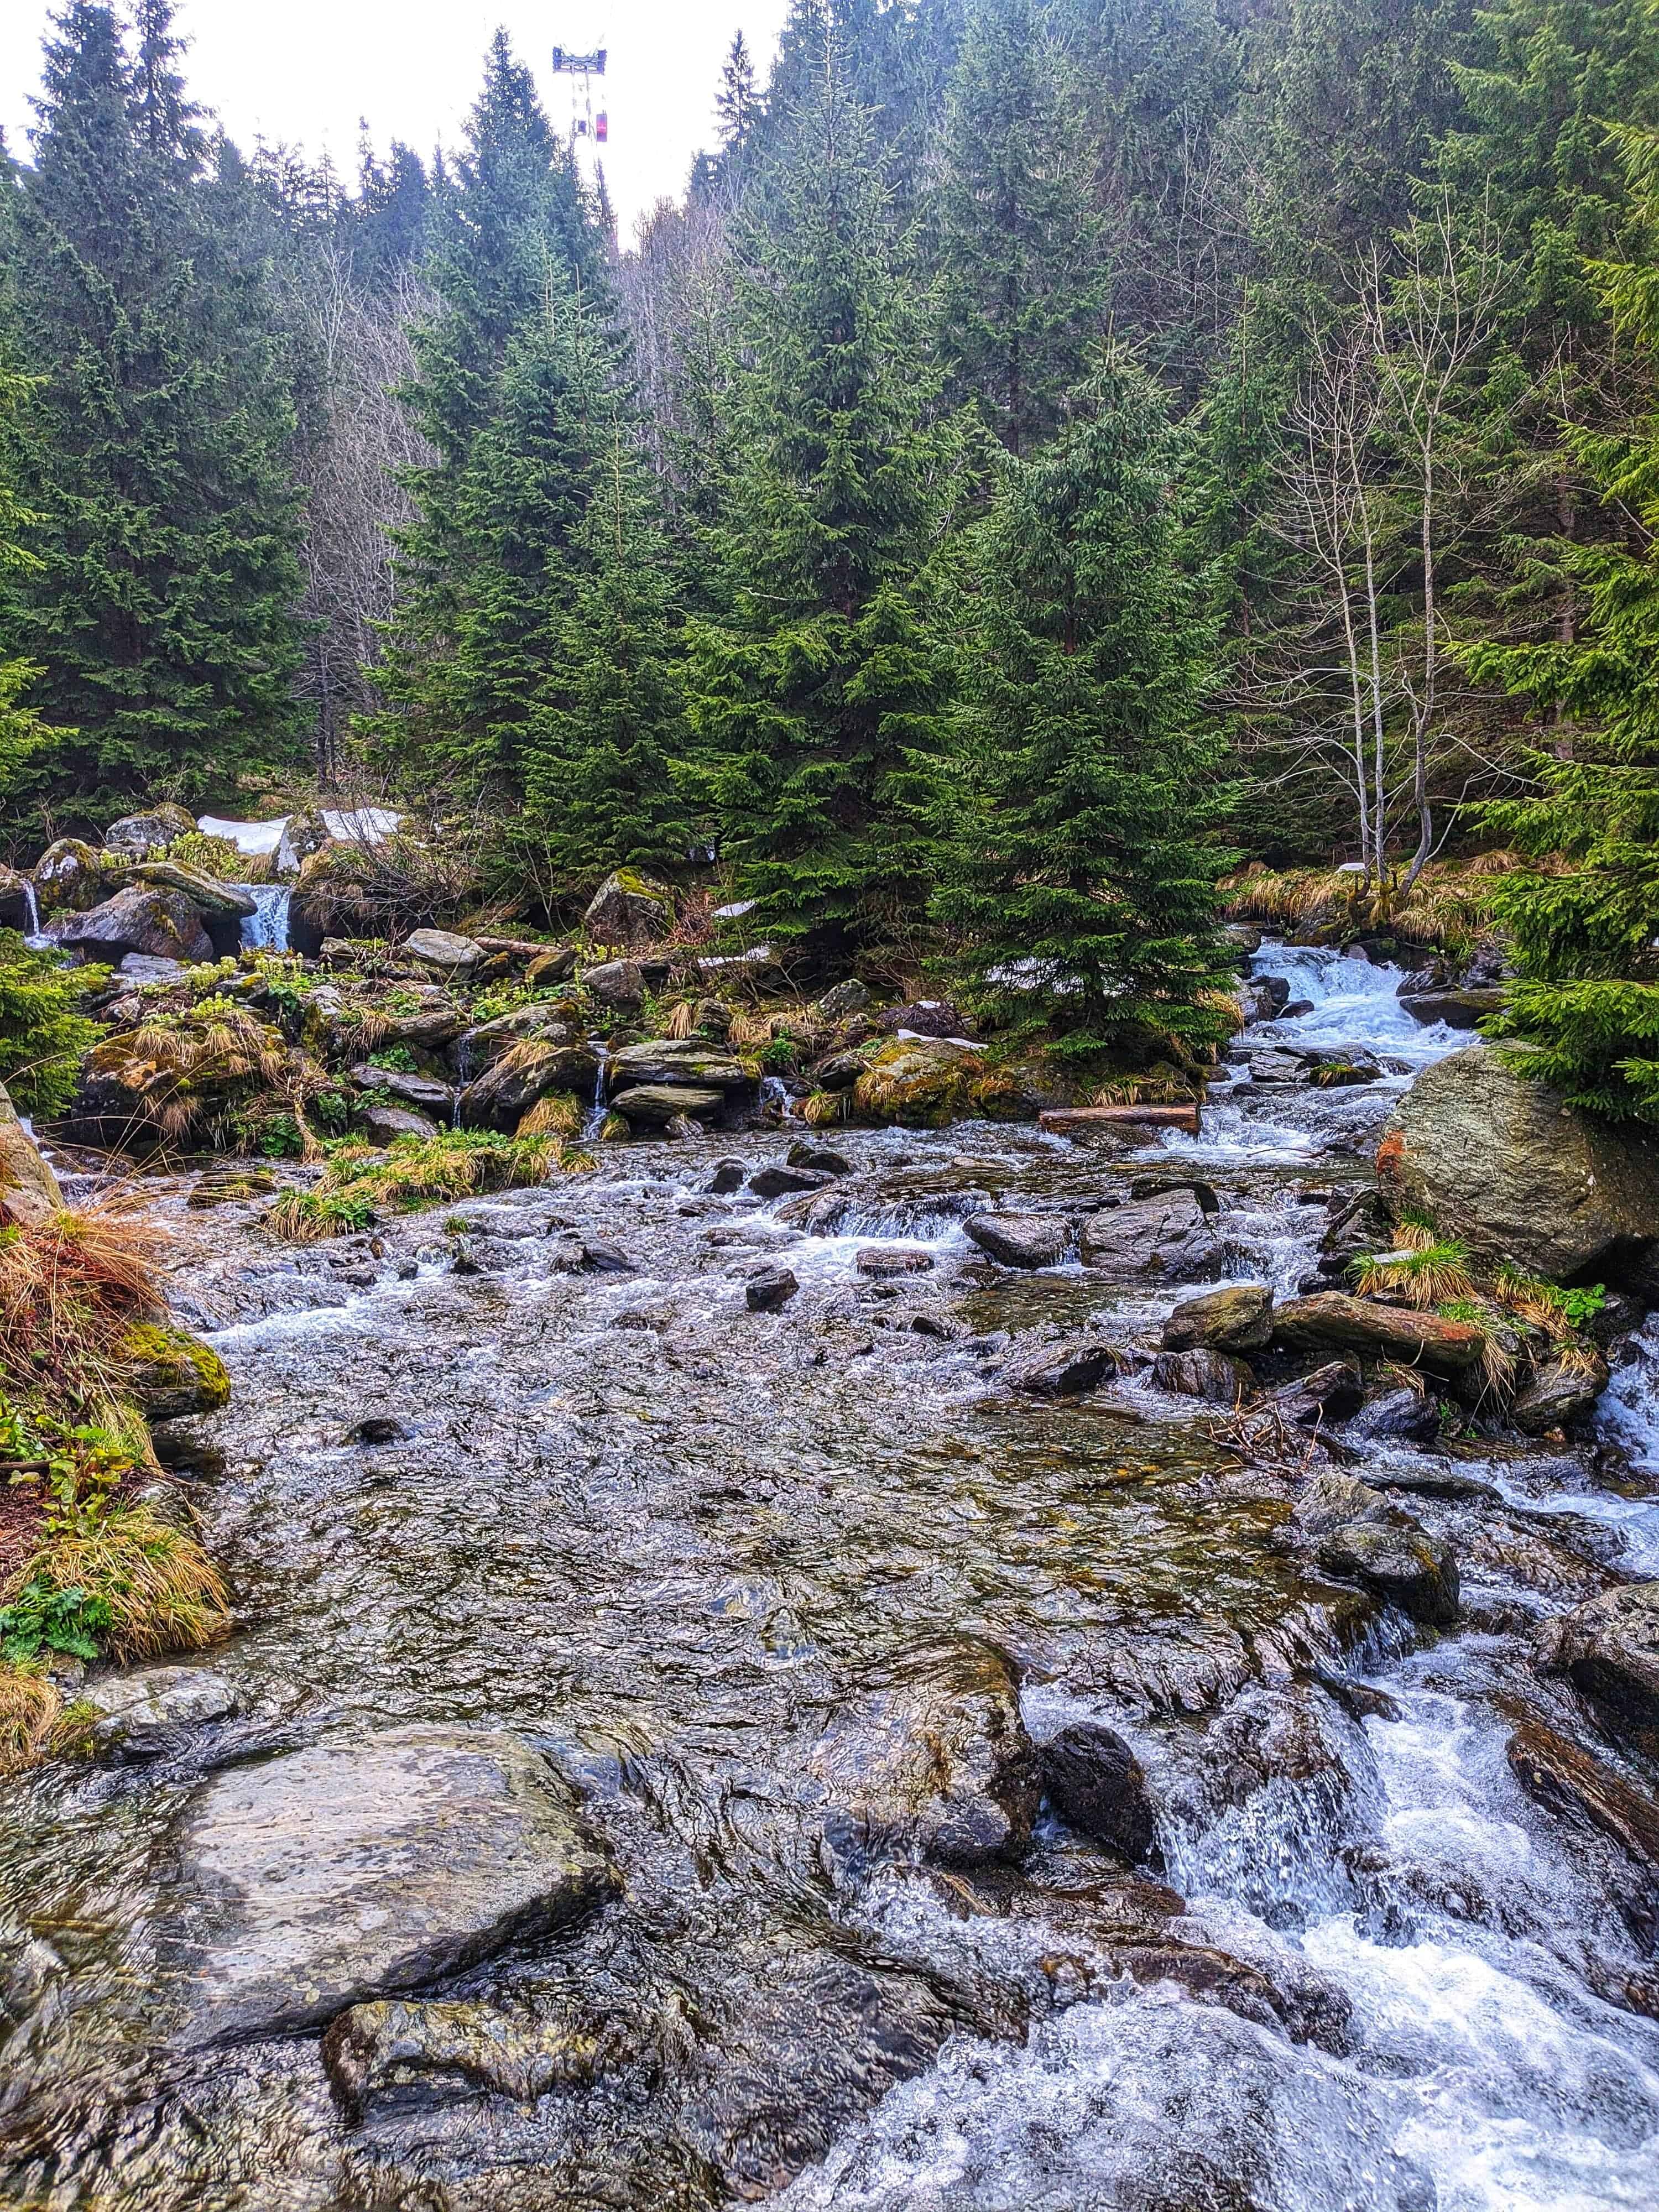 A little downstream from Bâlea waterfall